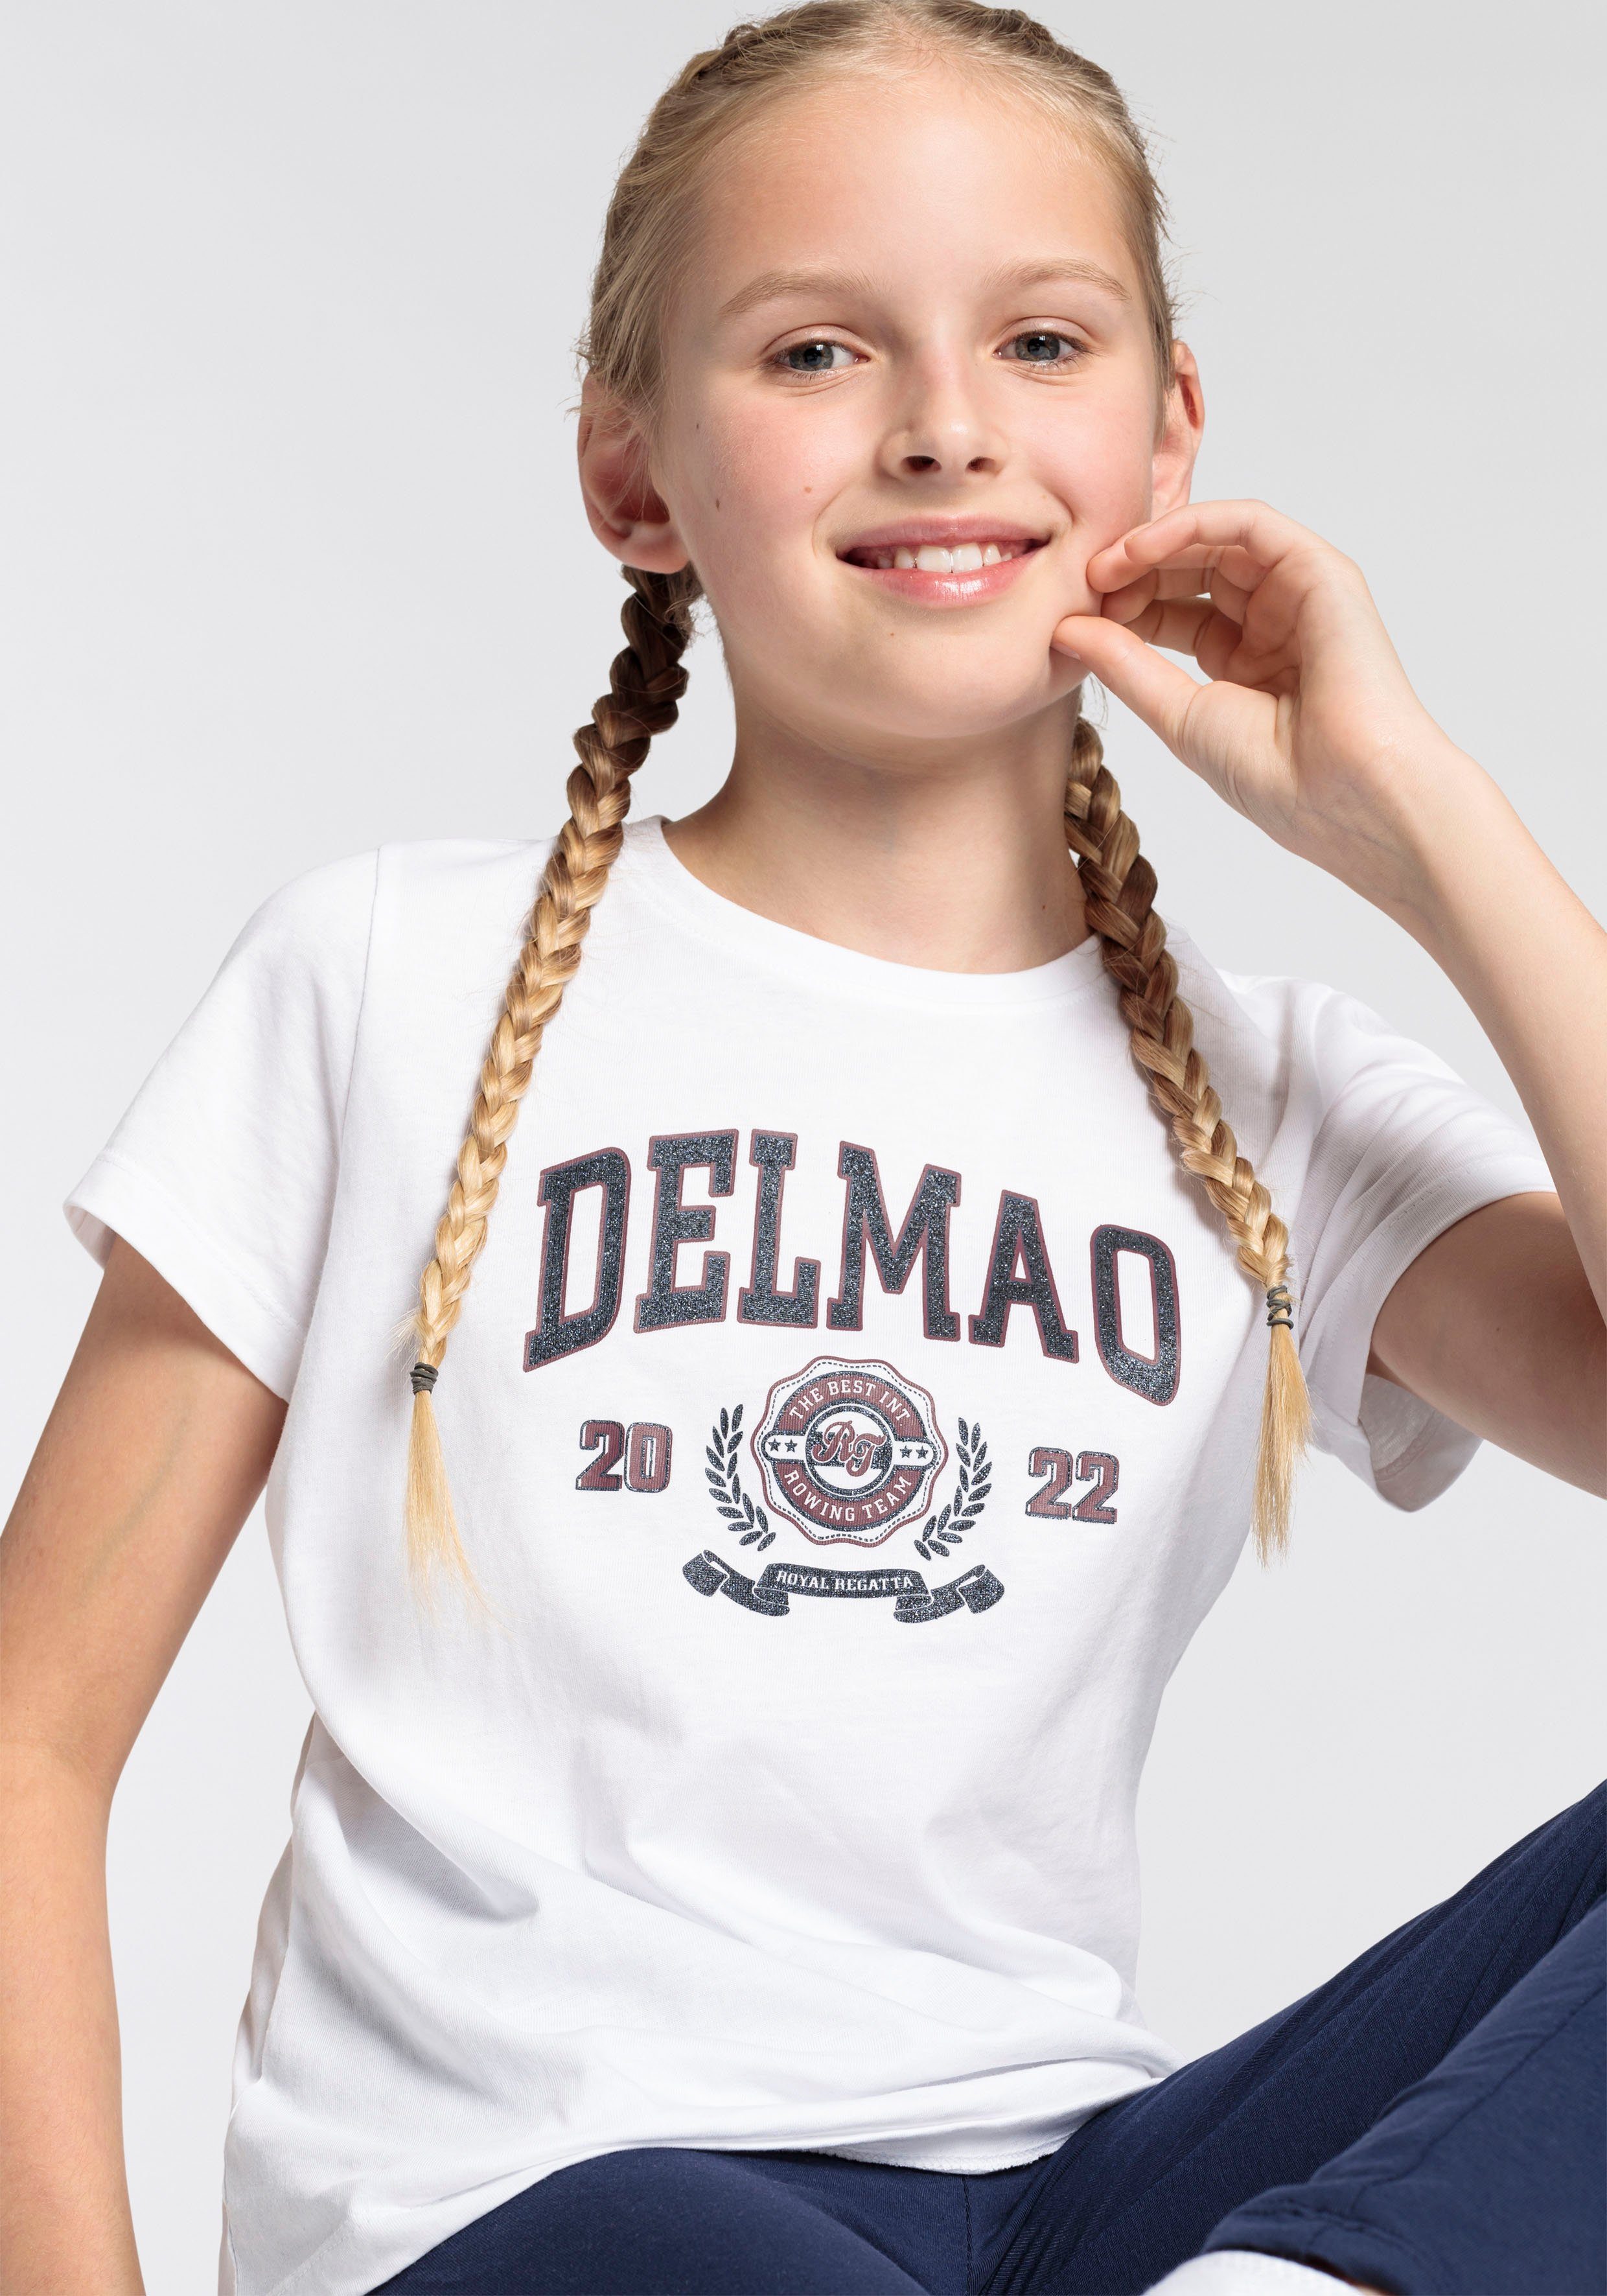 für mit großem Mädchen, Delmao-Glitzer-Print T-Shirt DELMAO